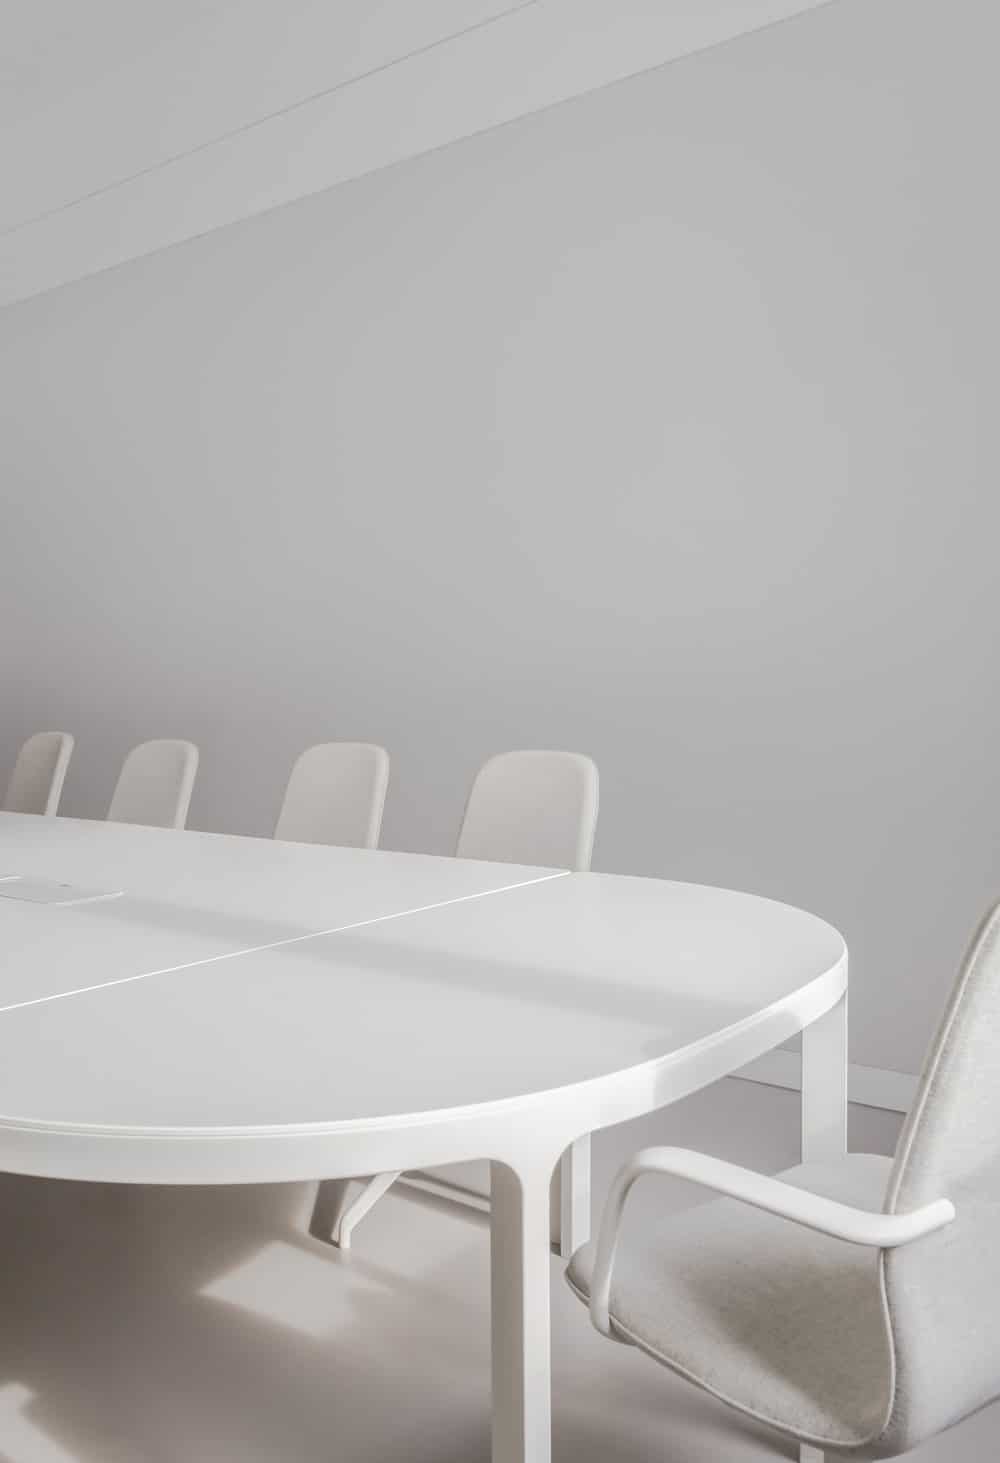 这是现代会议桌的近景，它与白色办公椅、白色墙壁和白色天花板完美搭配。